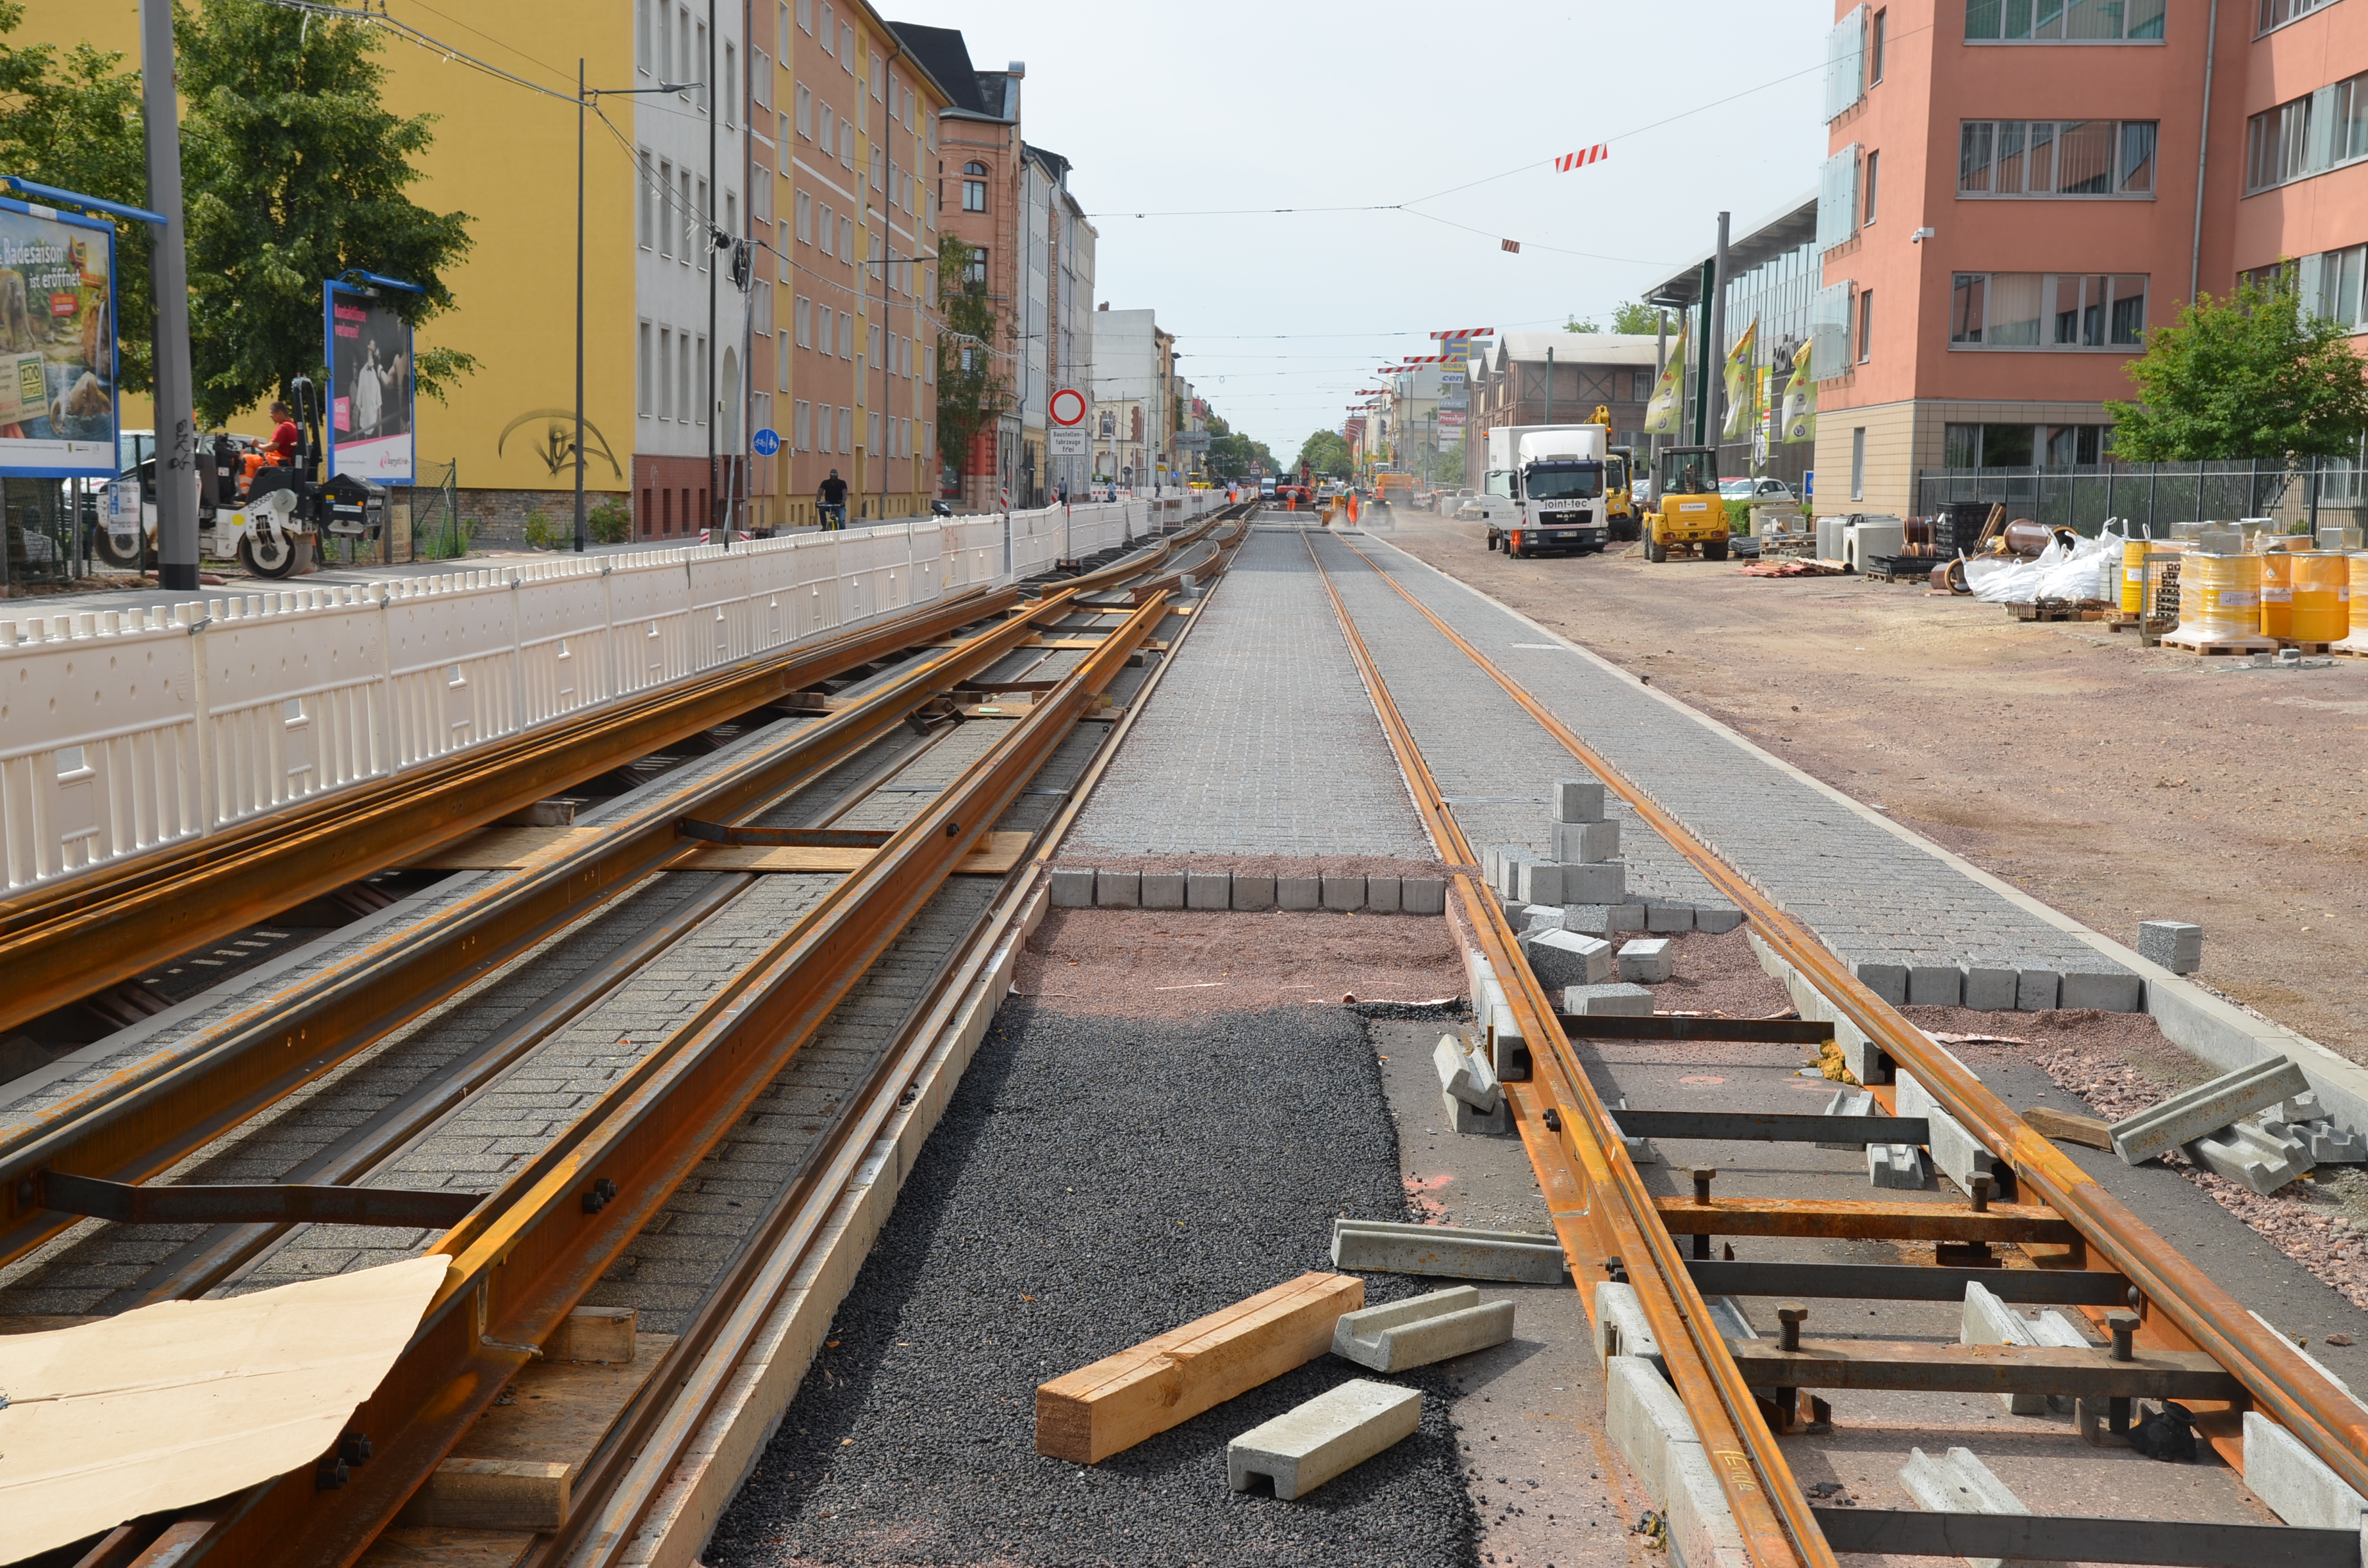 Das Bild zeigt die Baustelle in der Merseburger Straße. Hier sind schon auf zwei Fahrbahnen neue Straßenbahnschienen verlegt, jedoch fehlen noch Pflastersteine dazwischen.